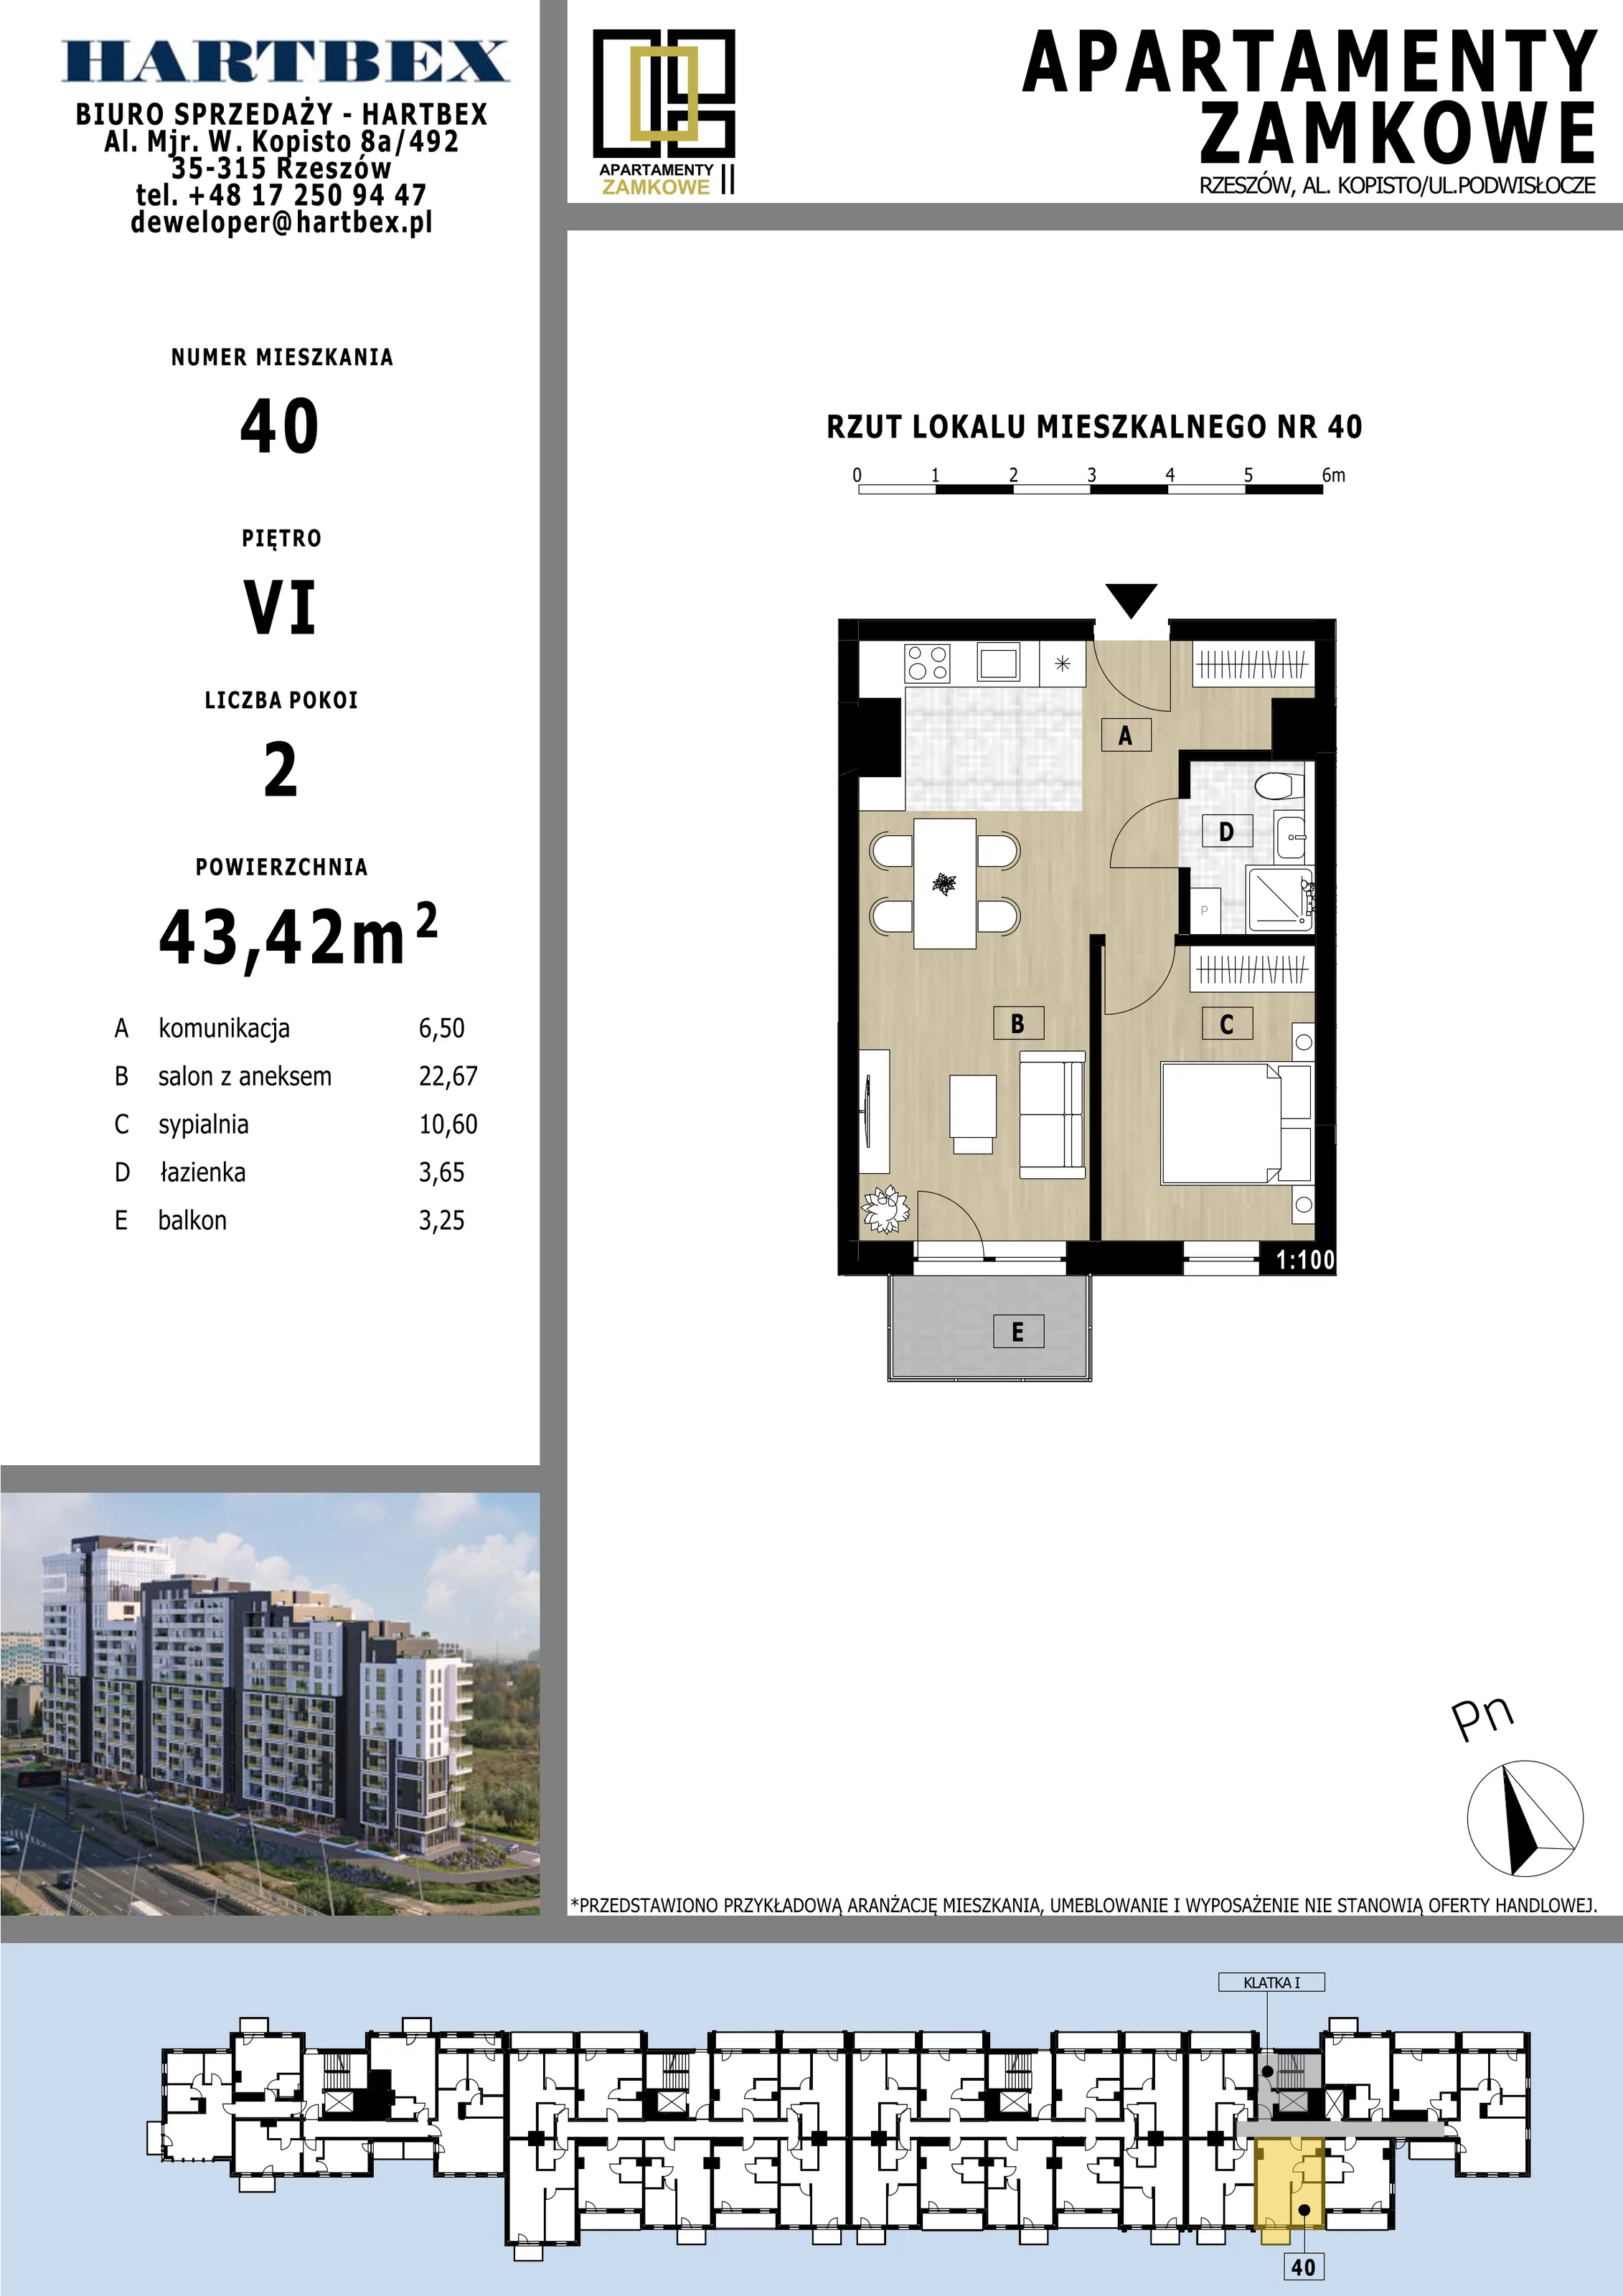 Mieszkanie 43,42 m², piętro 6, oferta nr 40, Apartamenty Zamkowe II, Rzeszów, Nowe Miasto, al. mjr W. Kopisto 11